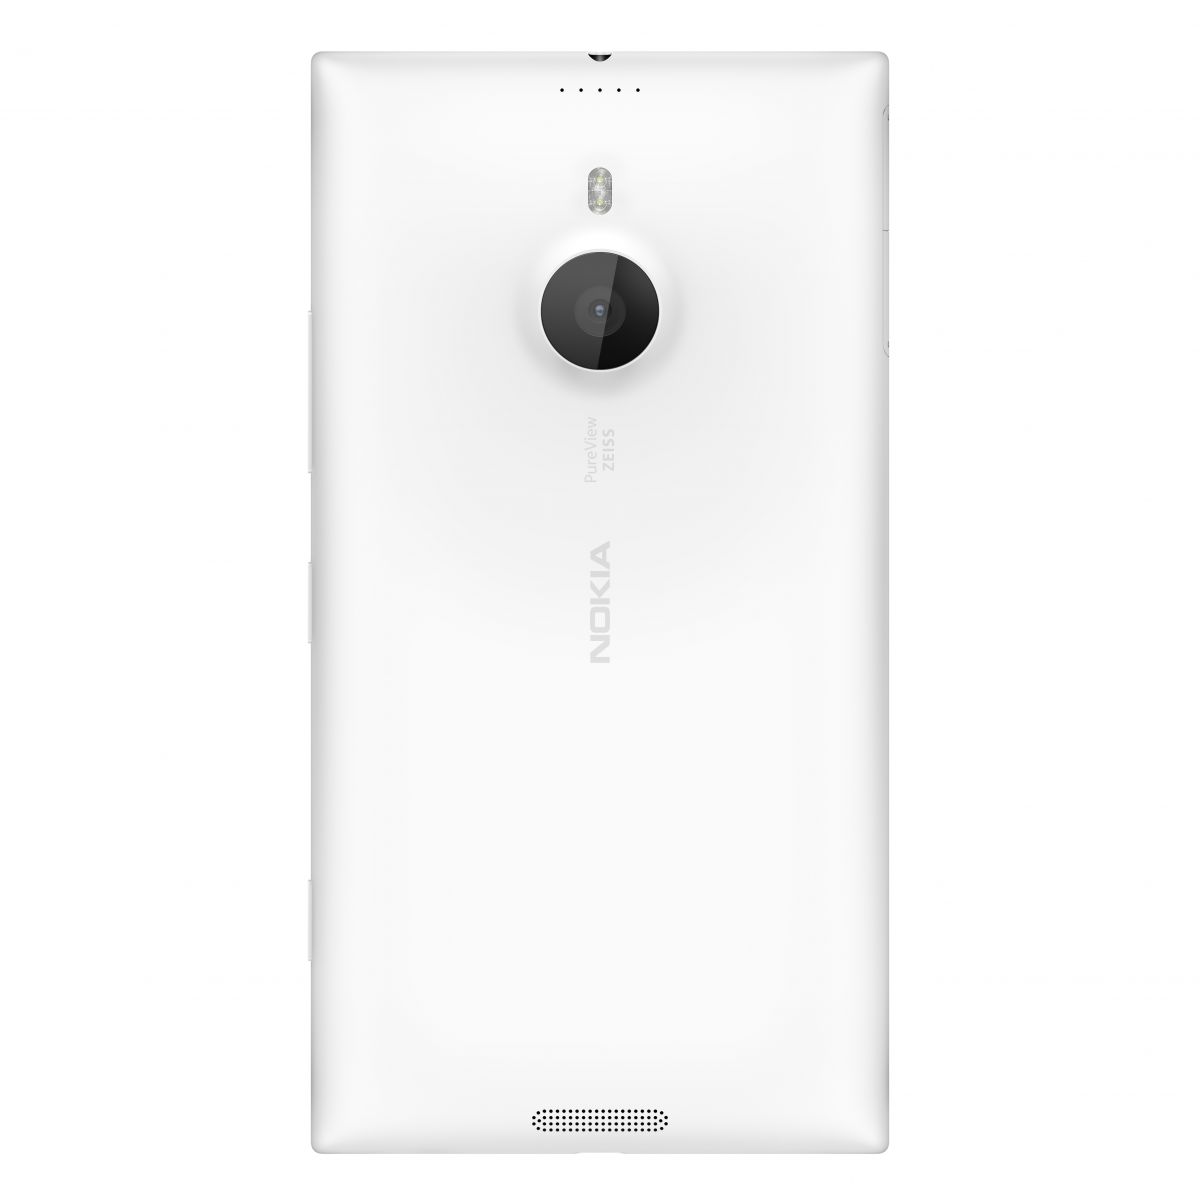 Lumia 1520 capteur photo